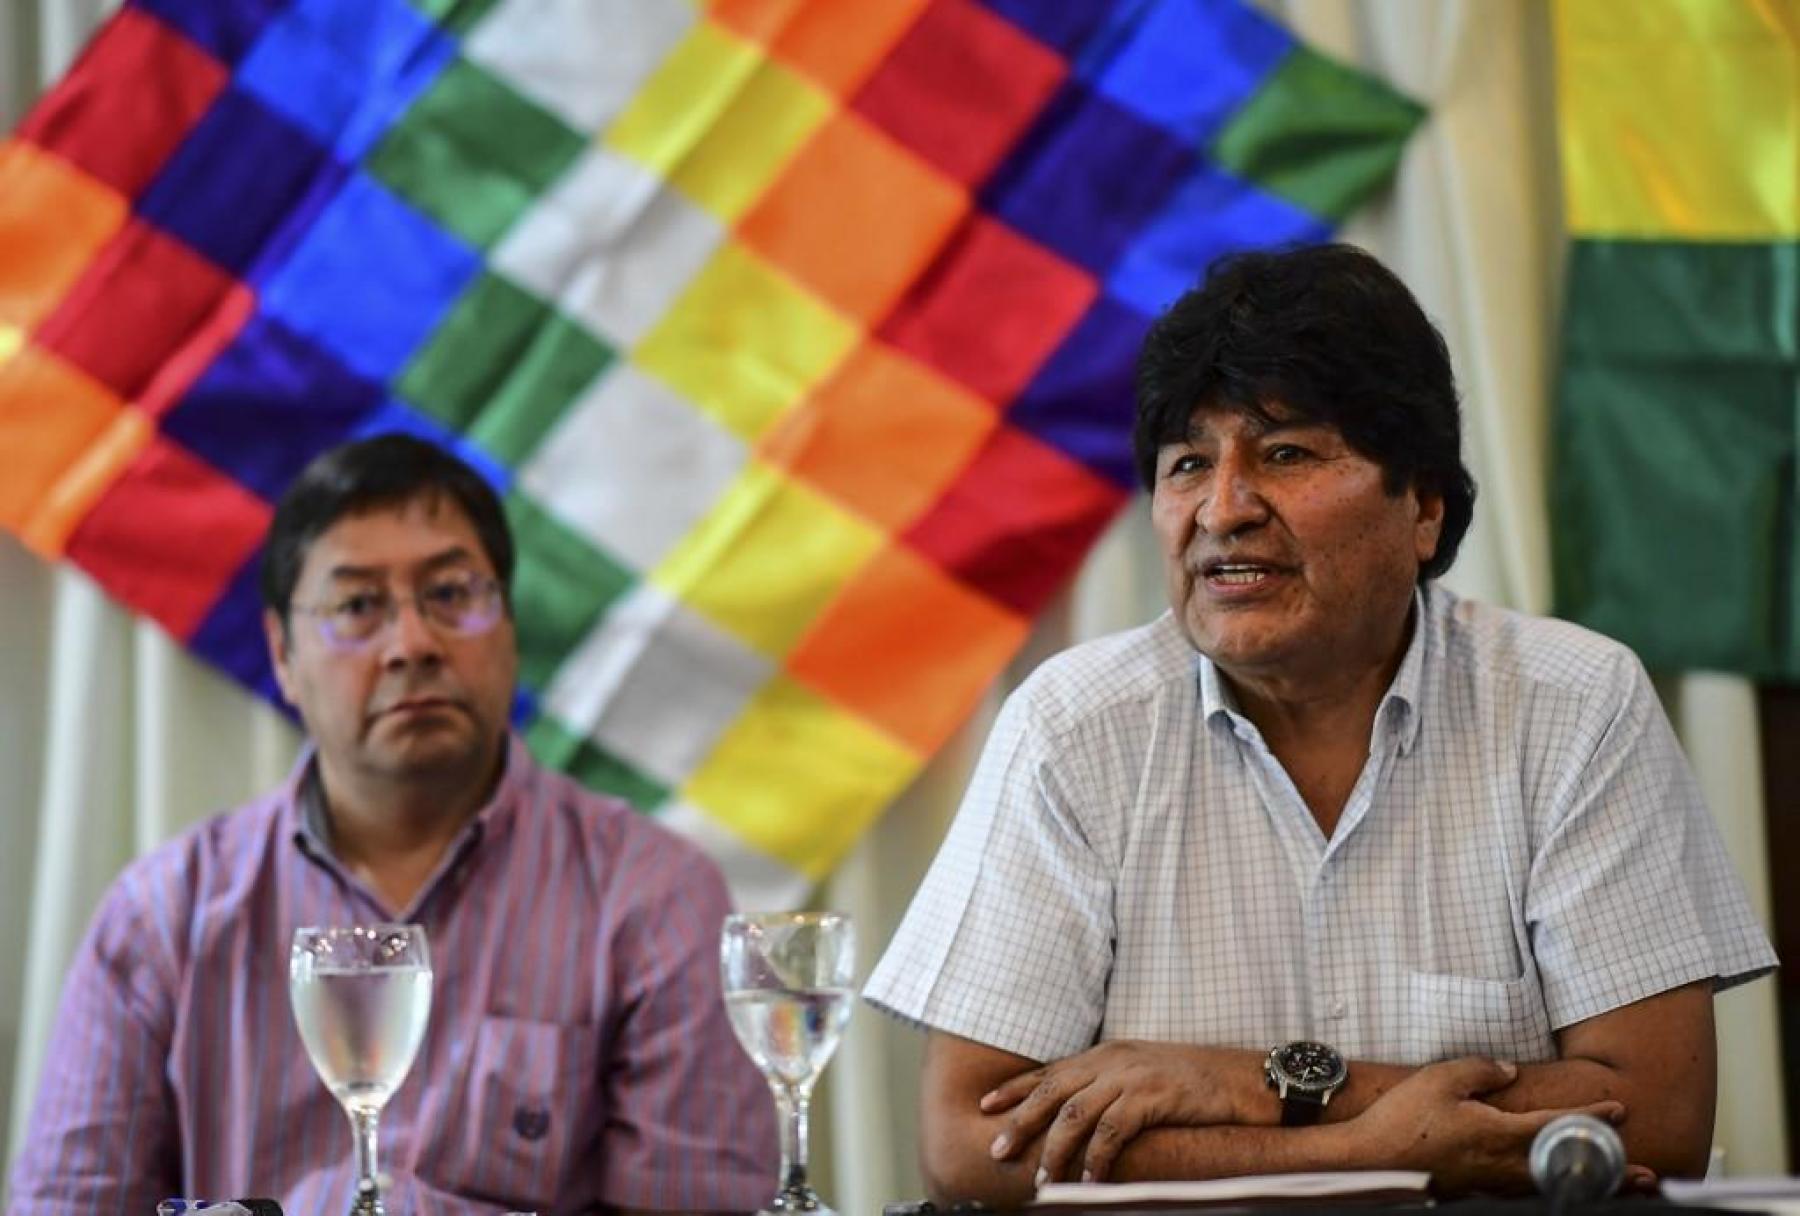 Después de reunión con Maduro, Evo Morales ya quiere volver a mandar en Bolivia